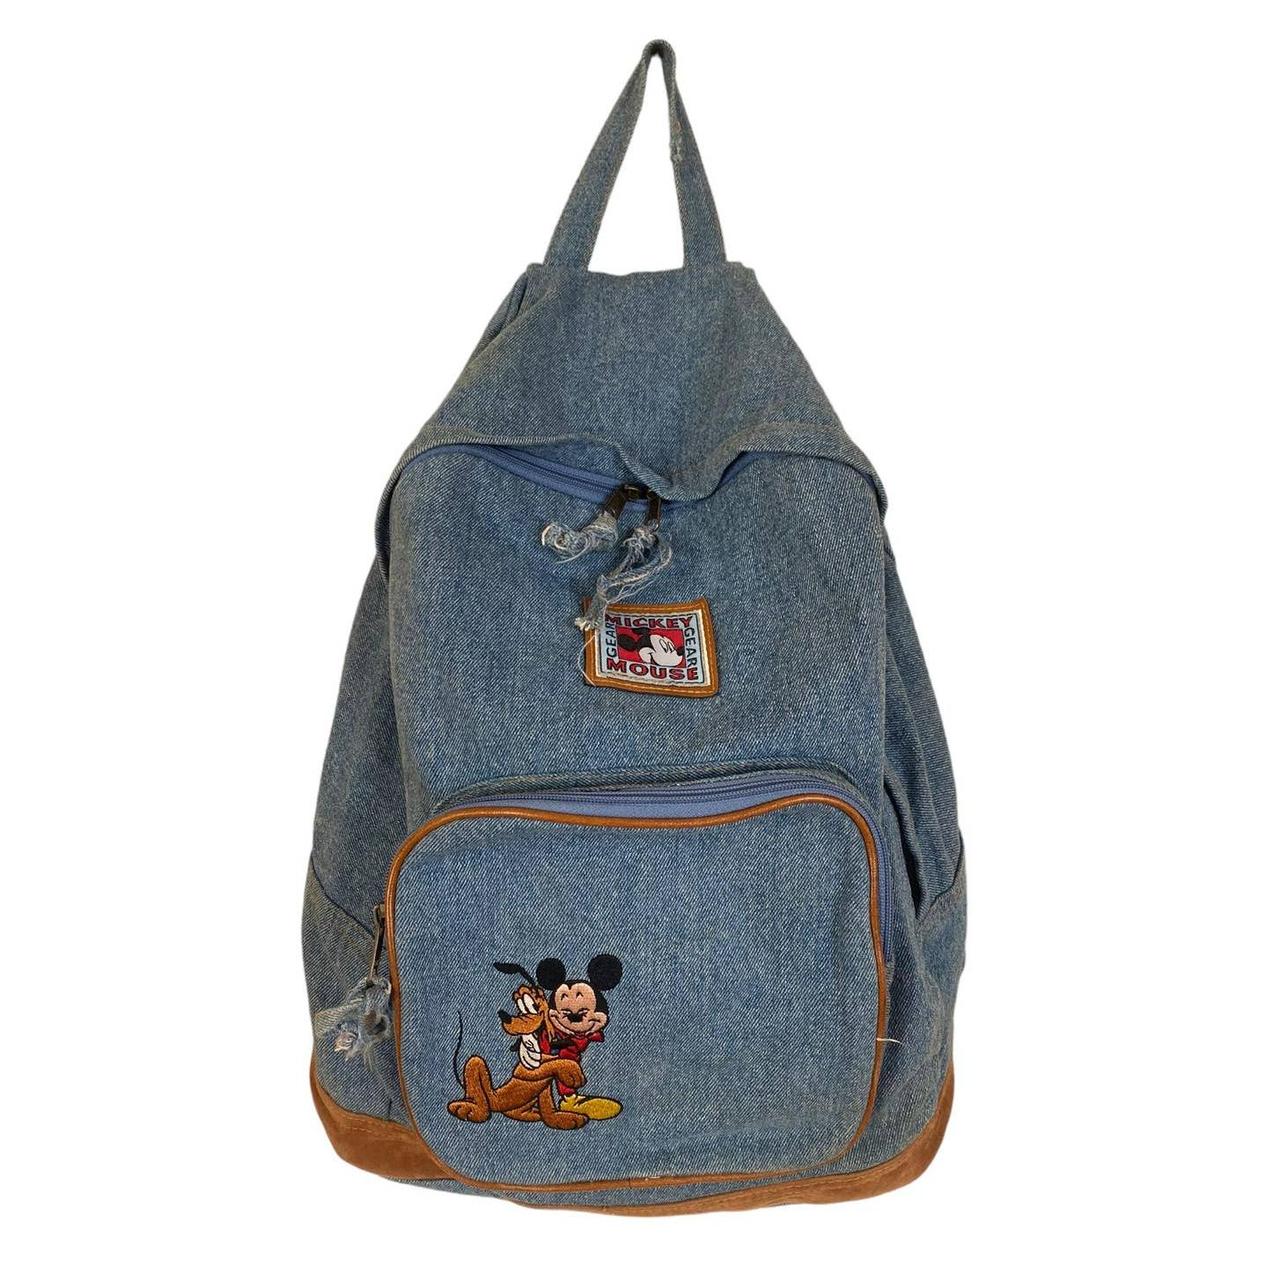 A super rare vintage denim backpack from Disney - Depop